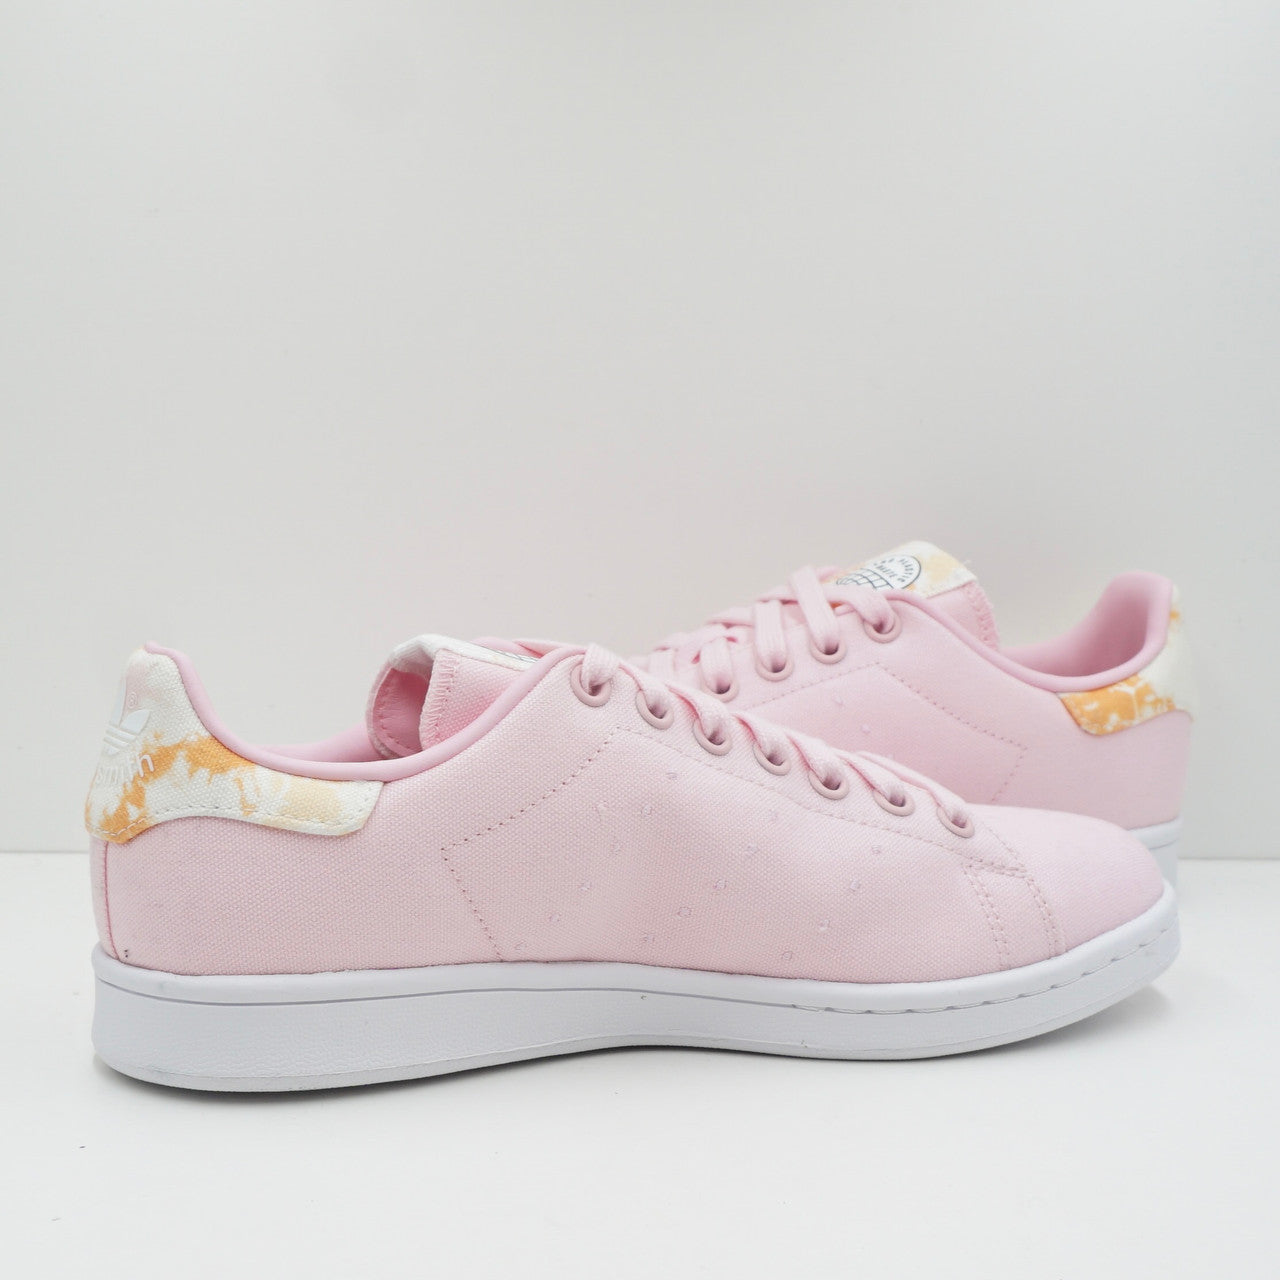 Adidas Stan Smith Clear Pink (W)